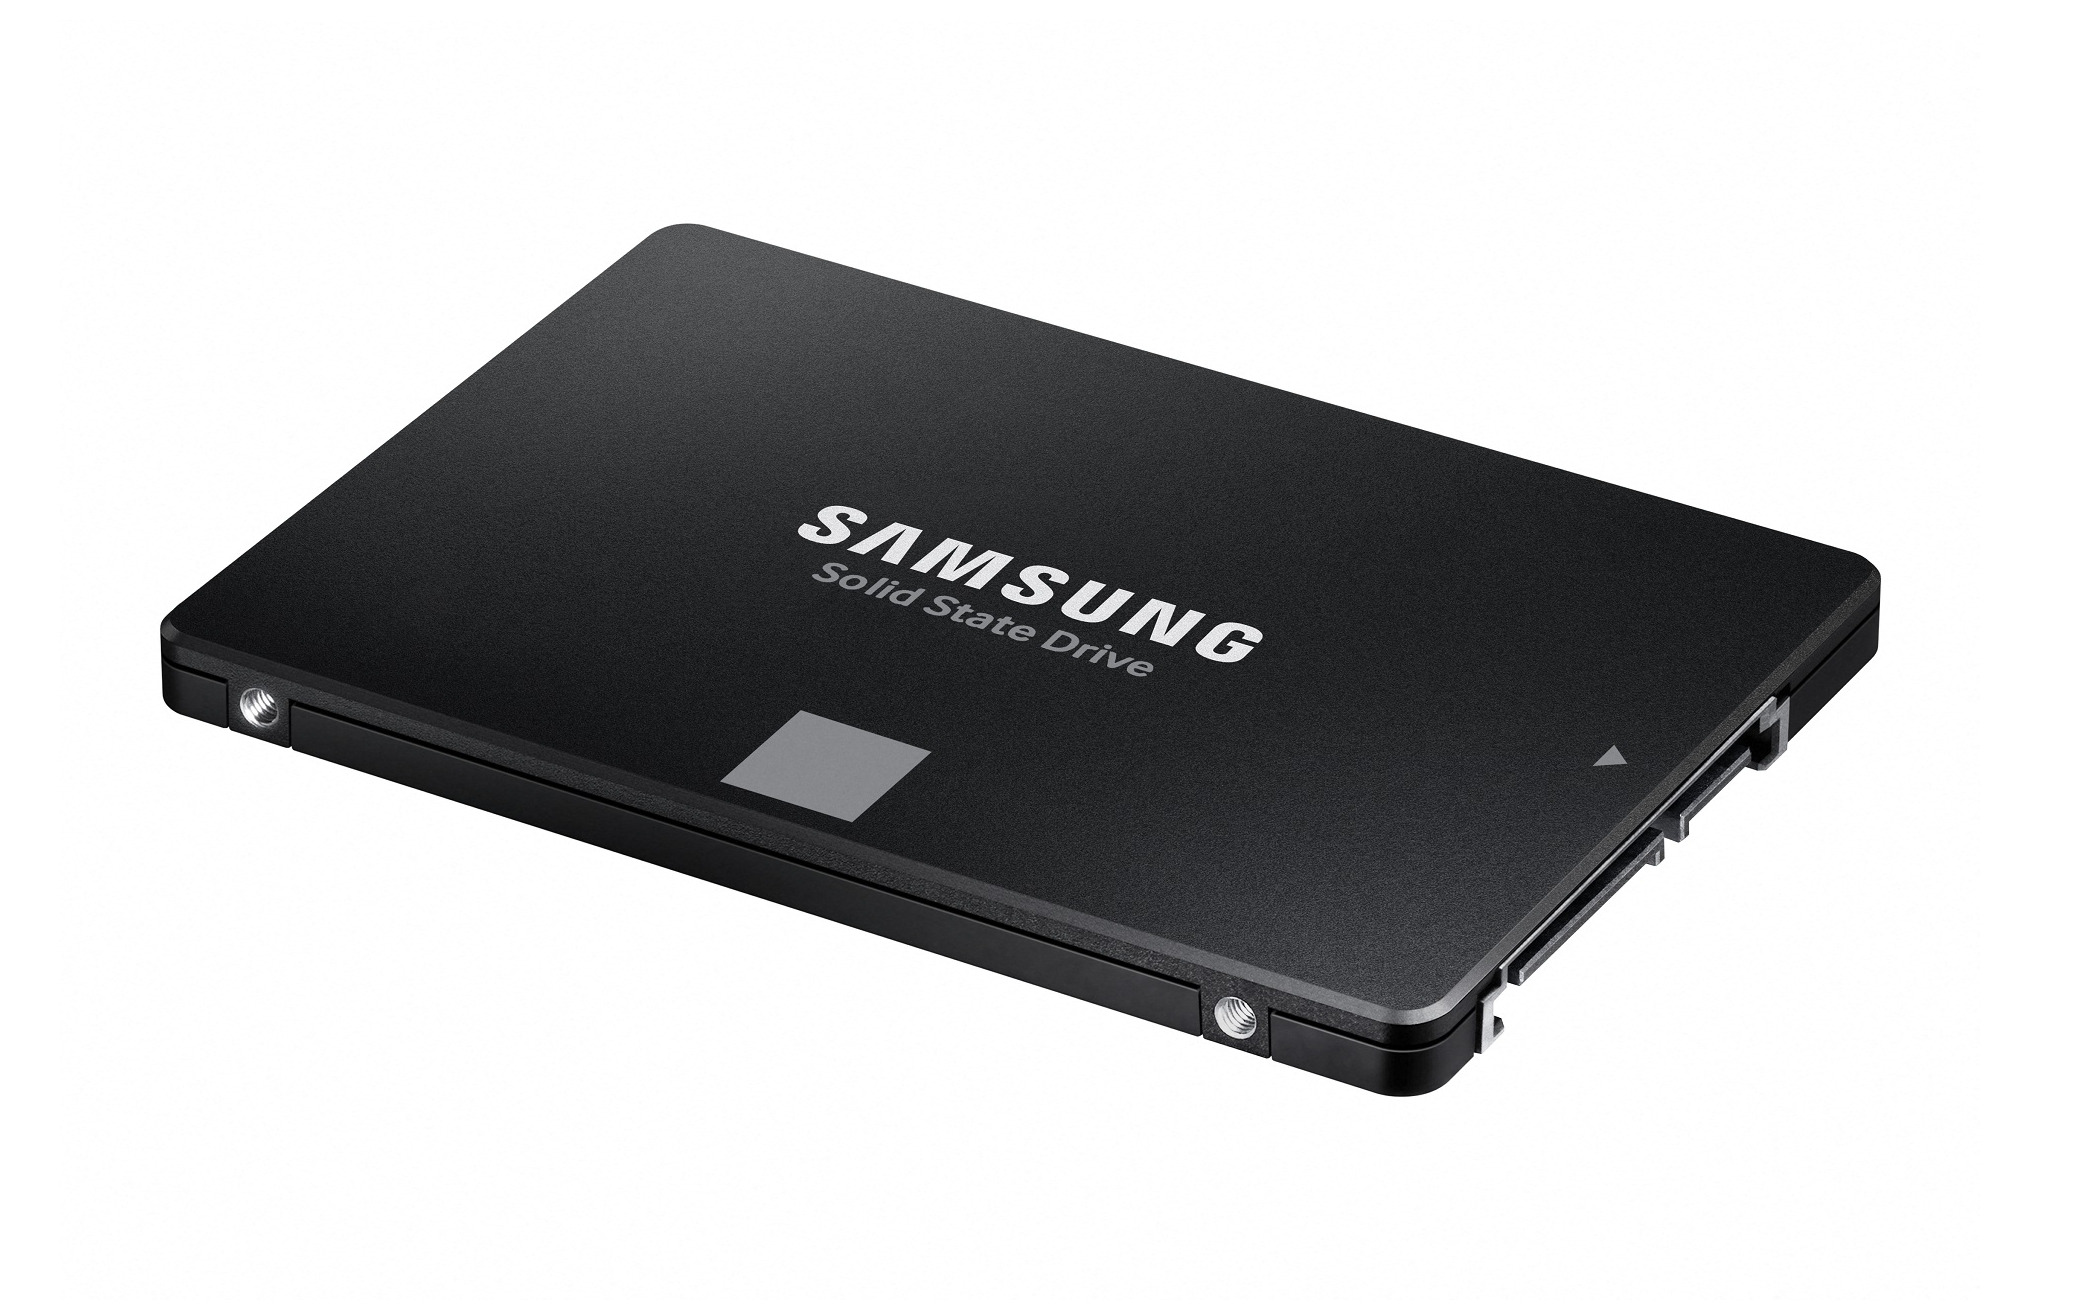 ? c?ng g?n trong SSD Samsung 870 EVO 250GB SATA 2.5 inch ( Ð?c 550MB/s - Ghi 530MB/s) - (MZ-77E250BW)